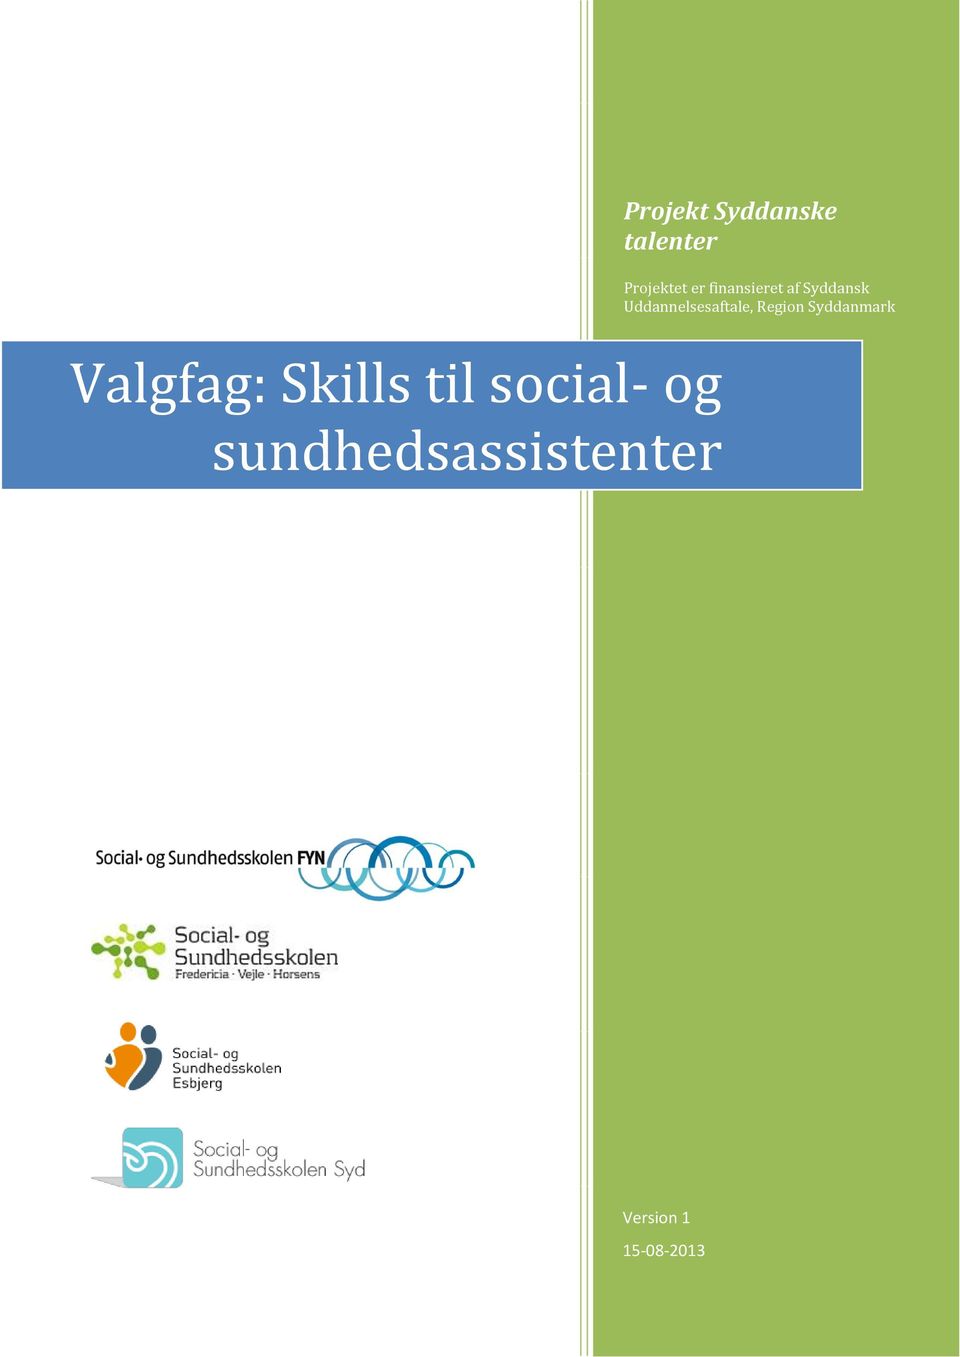 Region Syddanmark Valgfag: Skills til